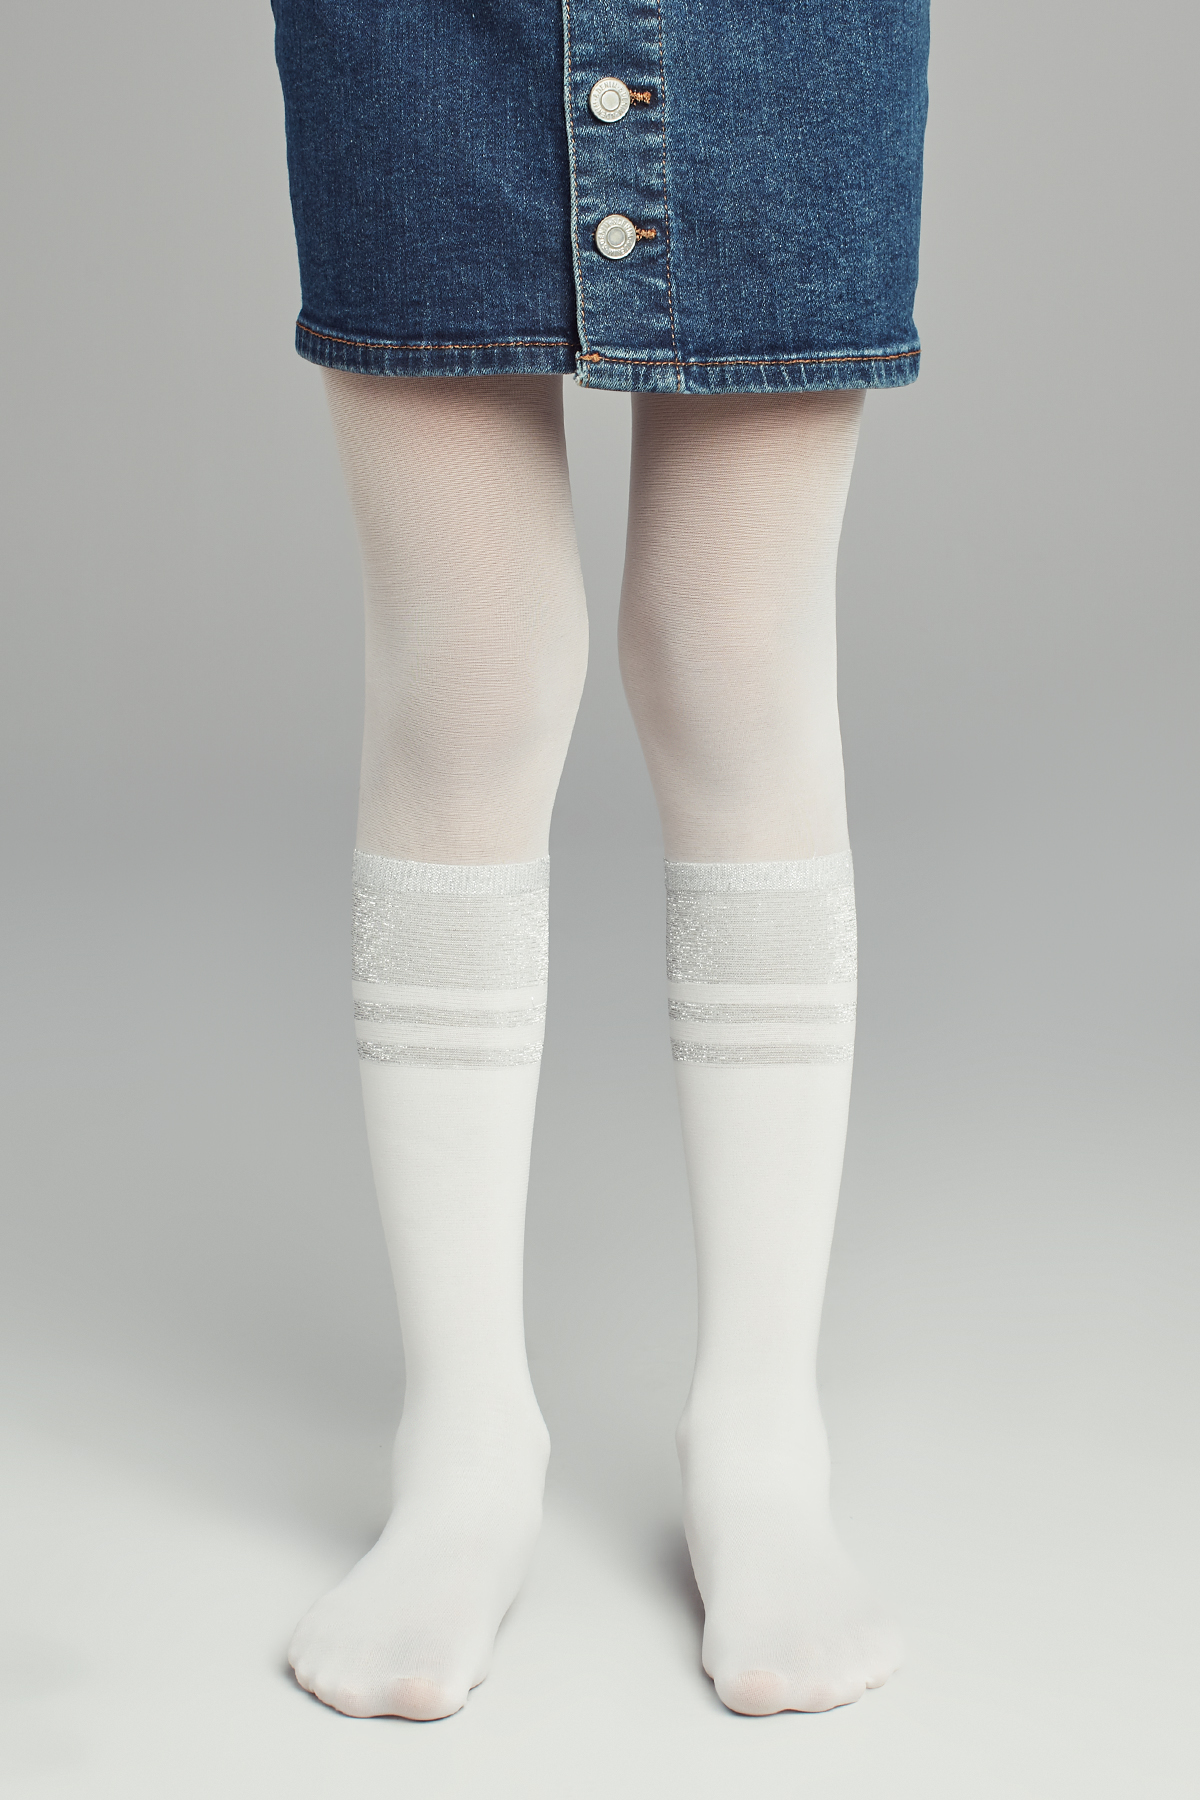 Penti Beyaz Kız Çocuk Çizgili Külotlu Çorap. 1